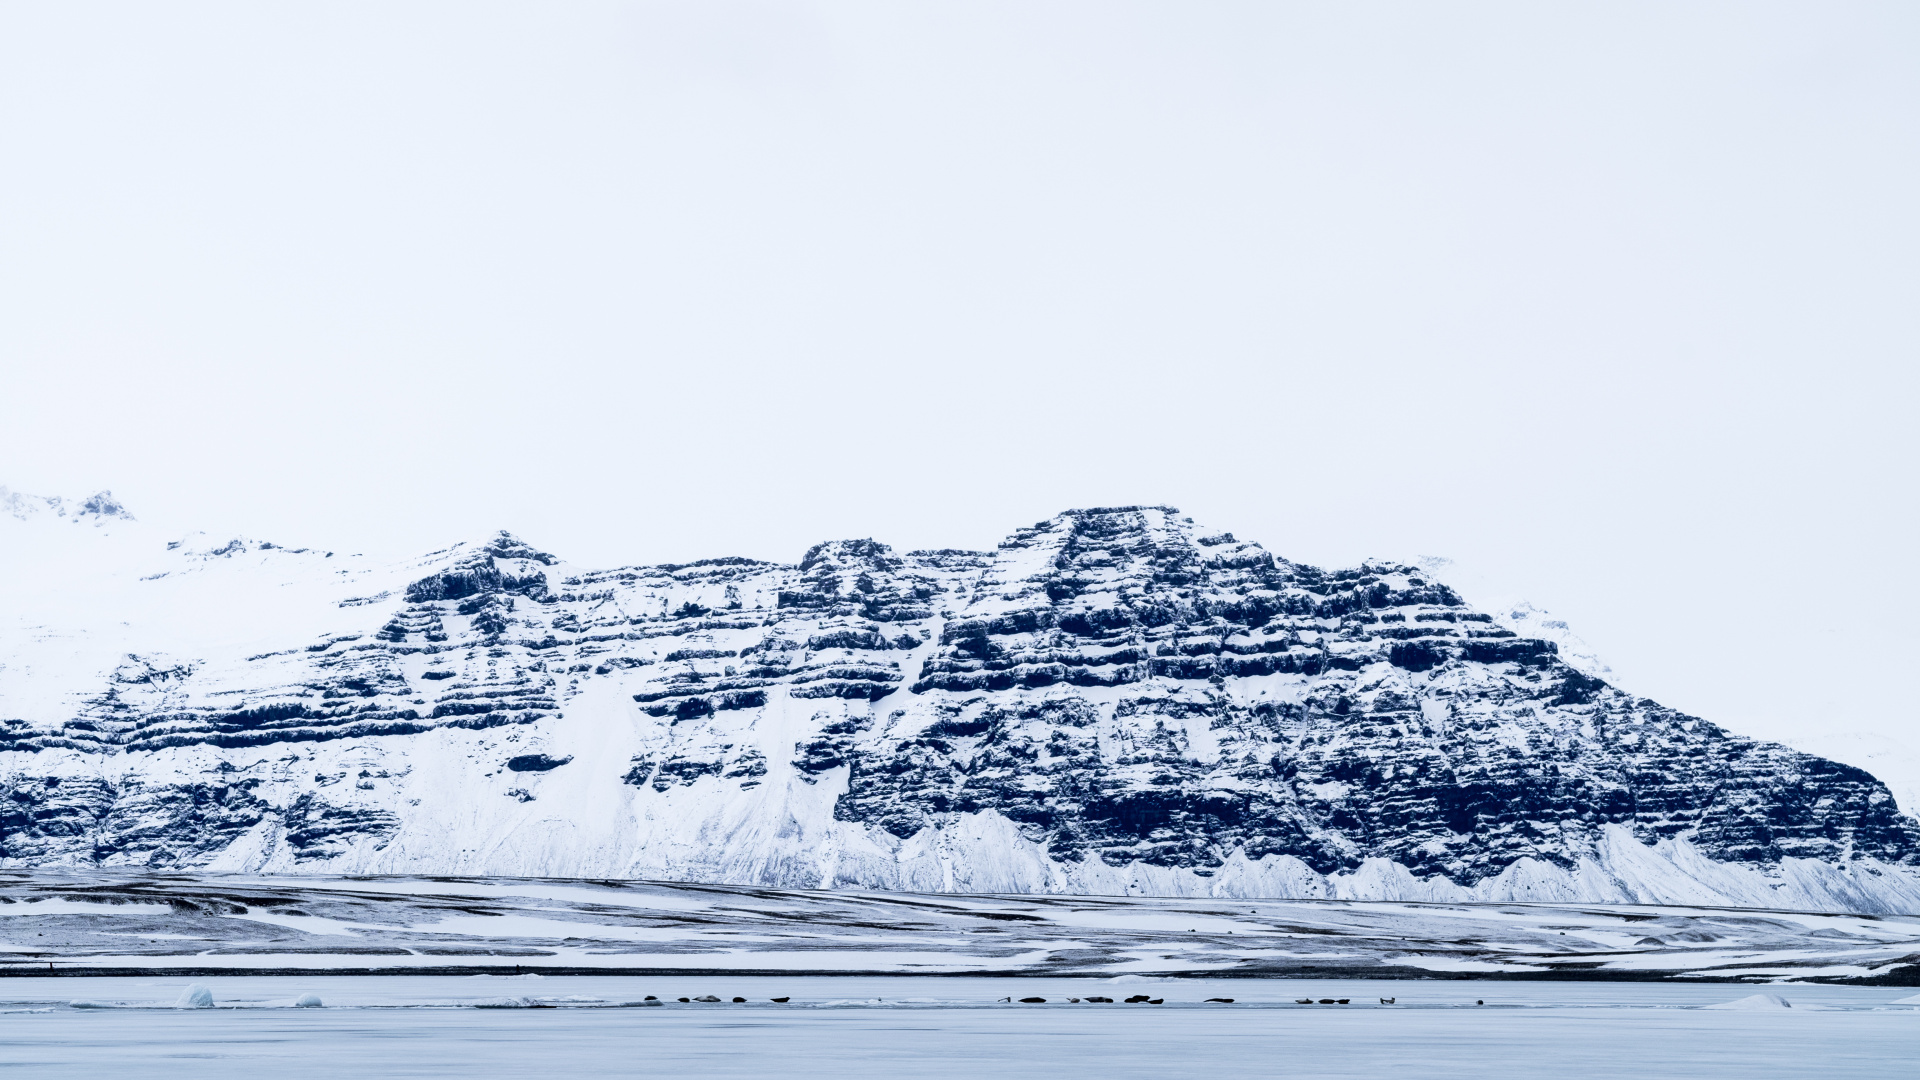 Gletscher, Eisberg, Wasser, Arktis, Meer. Wallpaper in 1920x1080 Resolution